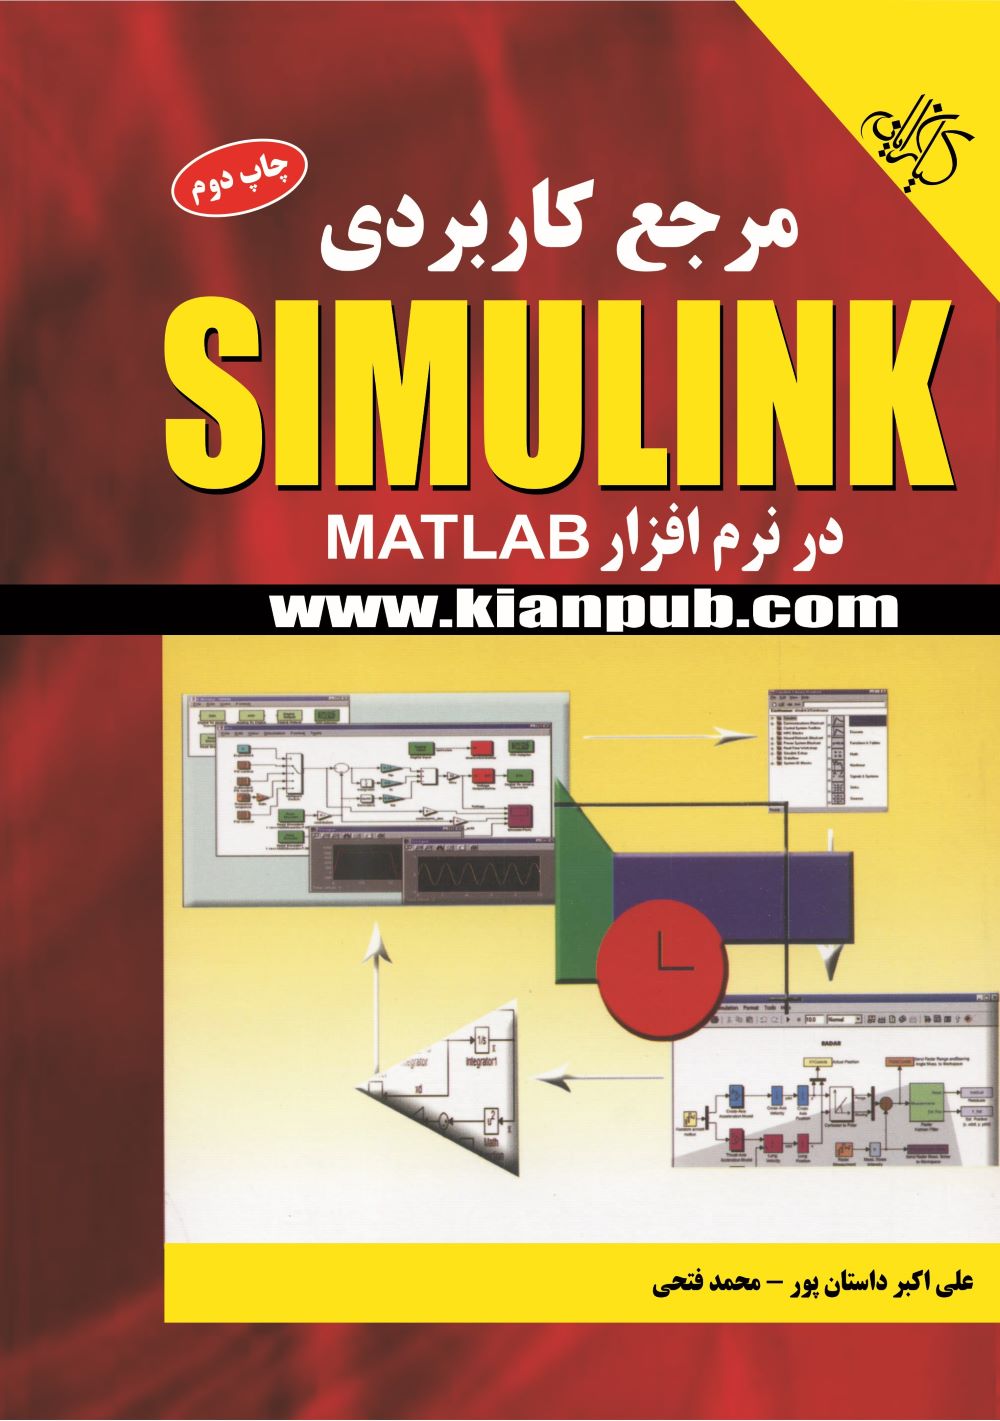  خريد کتاب  مرجع کاربردی Simulink در نرم افزار MATLAB